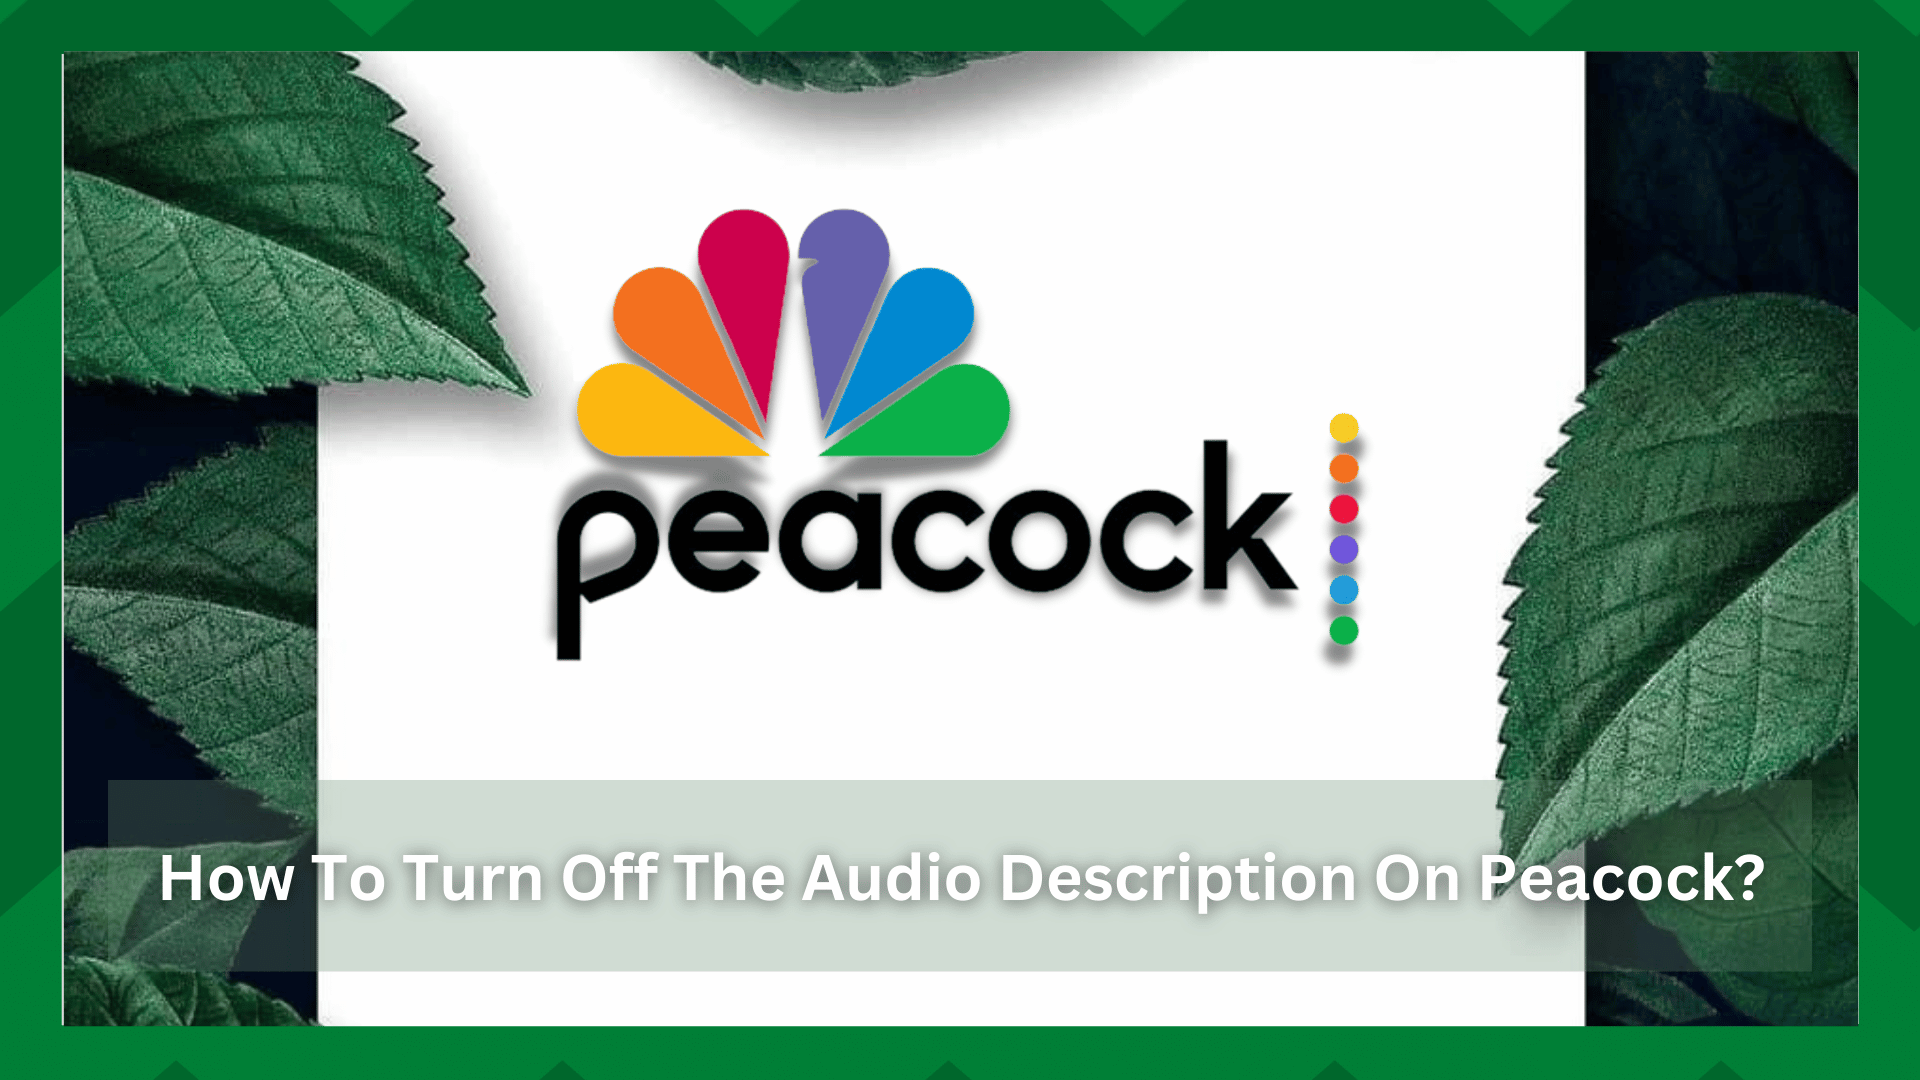 5 τρόποι για να απενεργοποιήσετε την περιγραφή ήχου στο Peacock